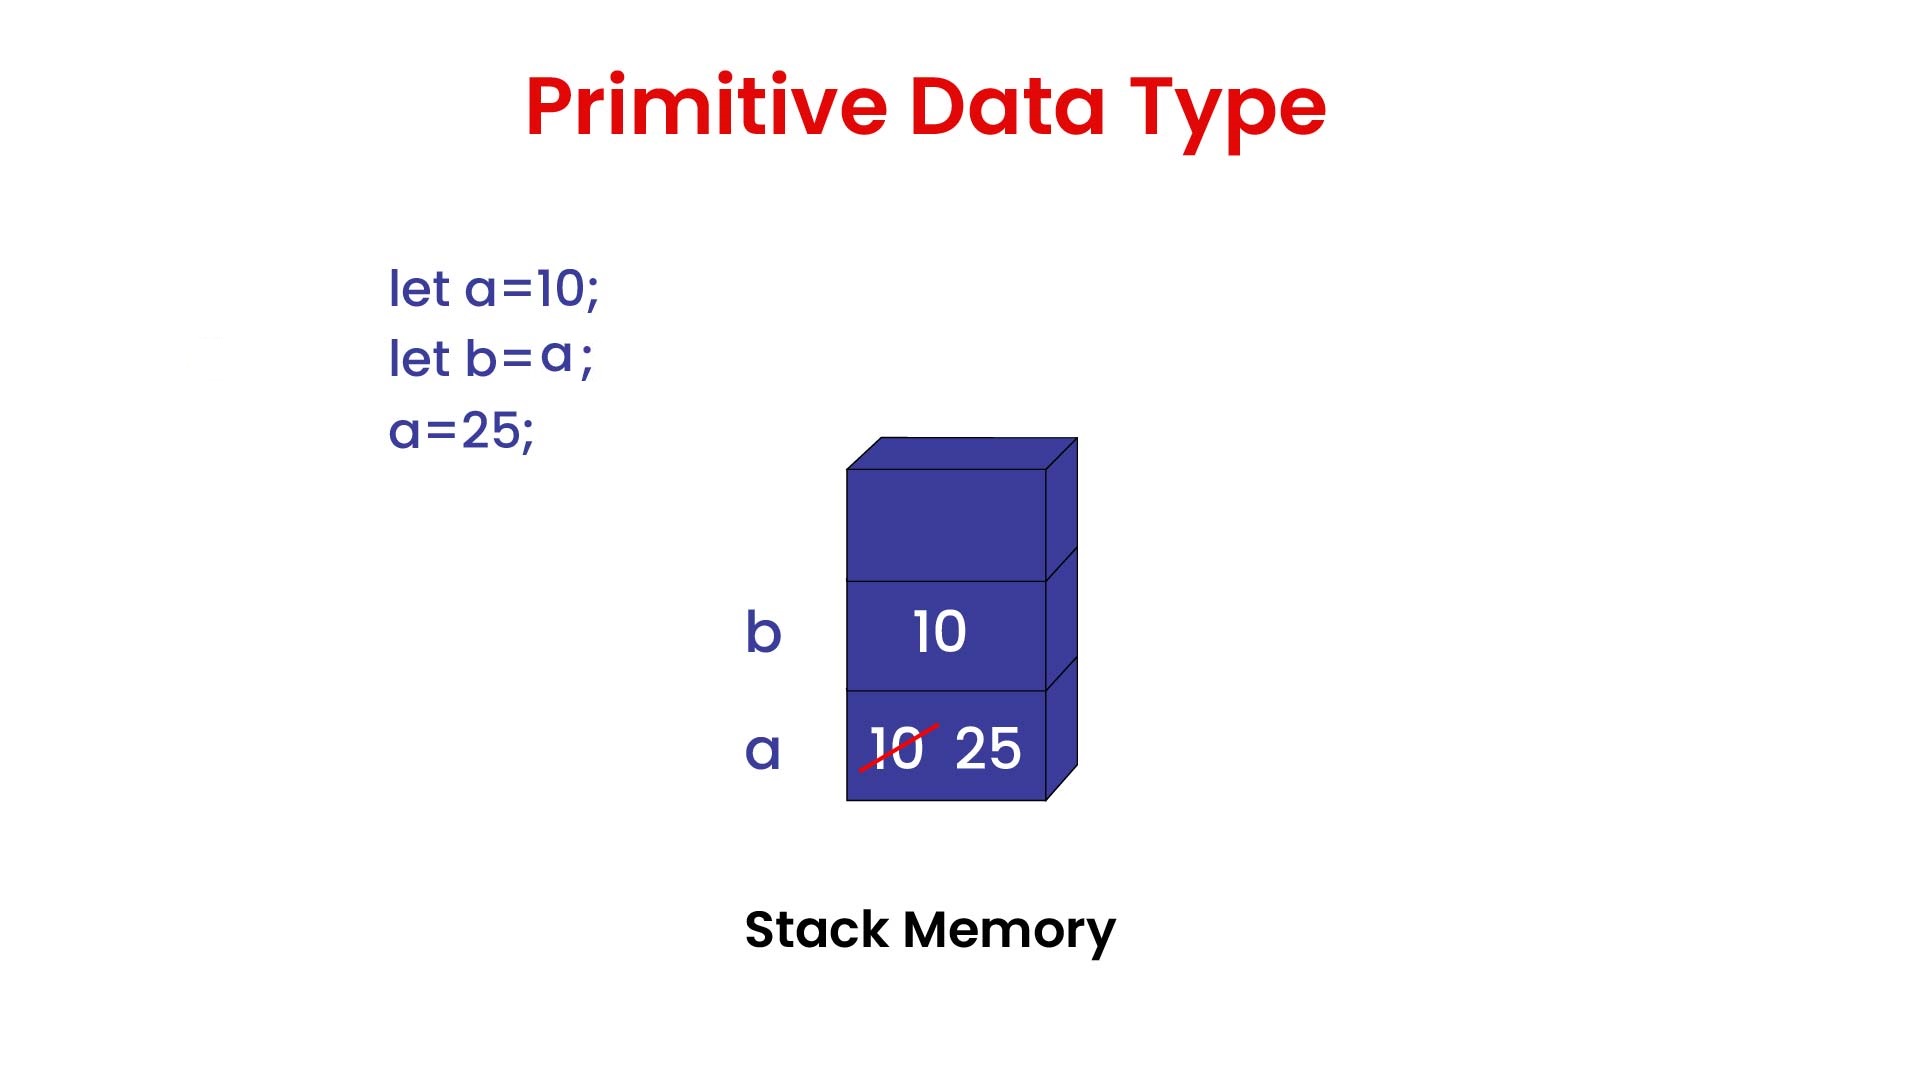 Primitive data types in JS